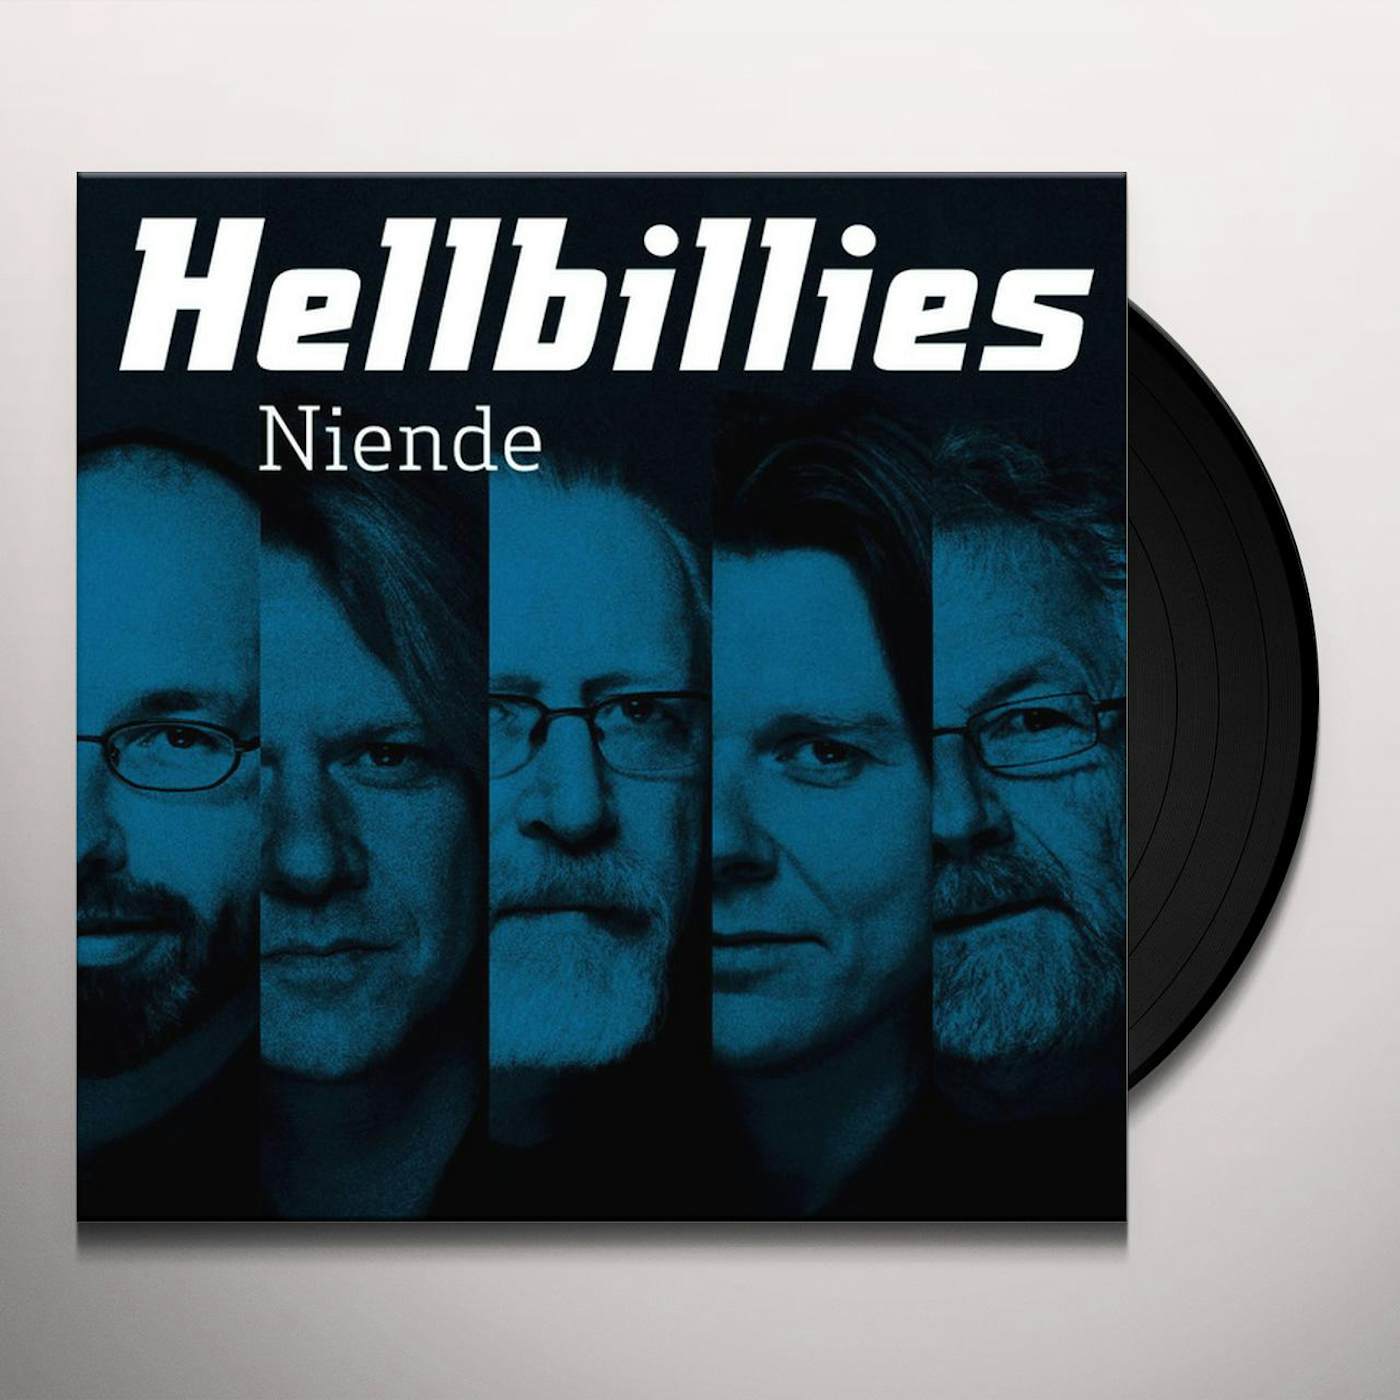 Hellbillies Niende Vinyl Record